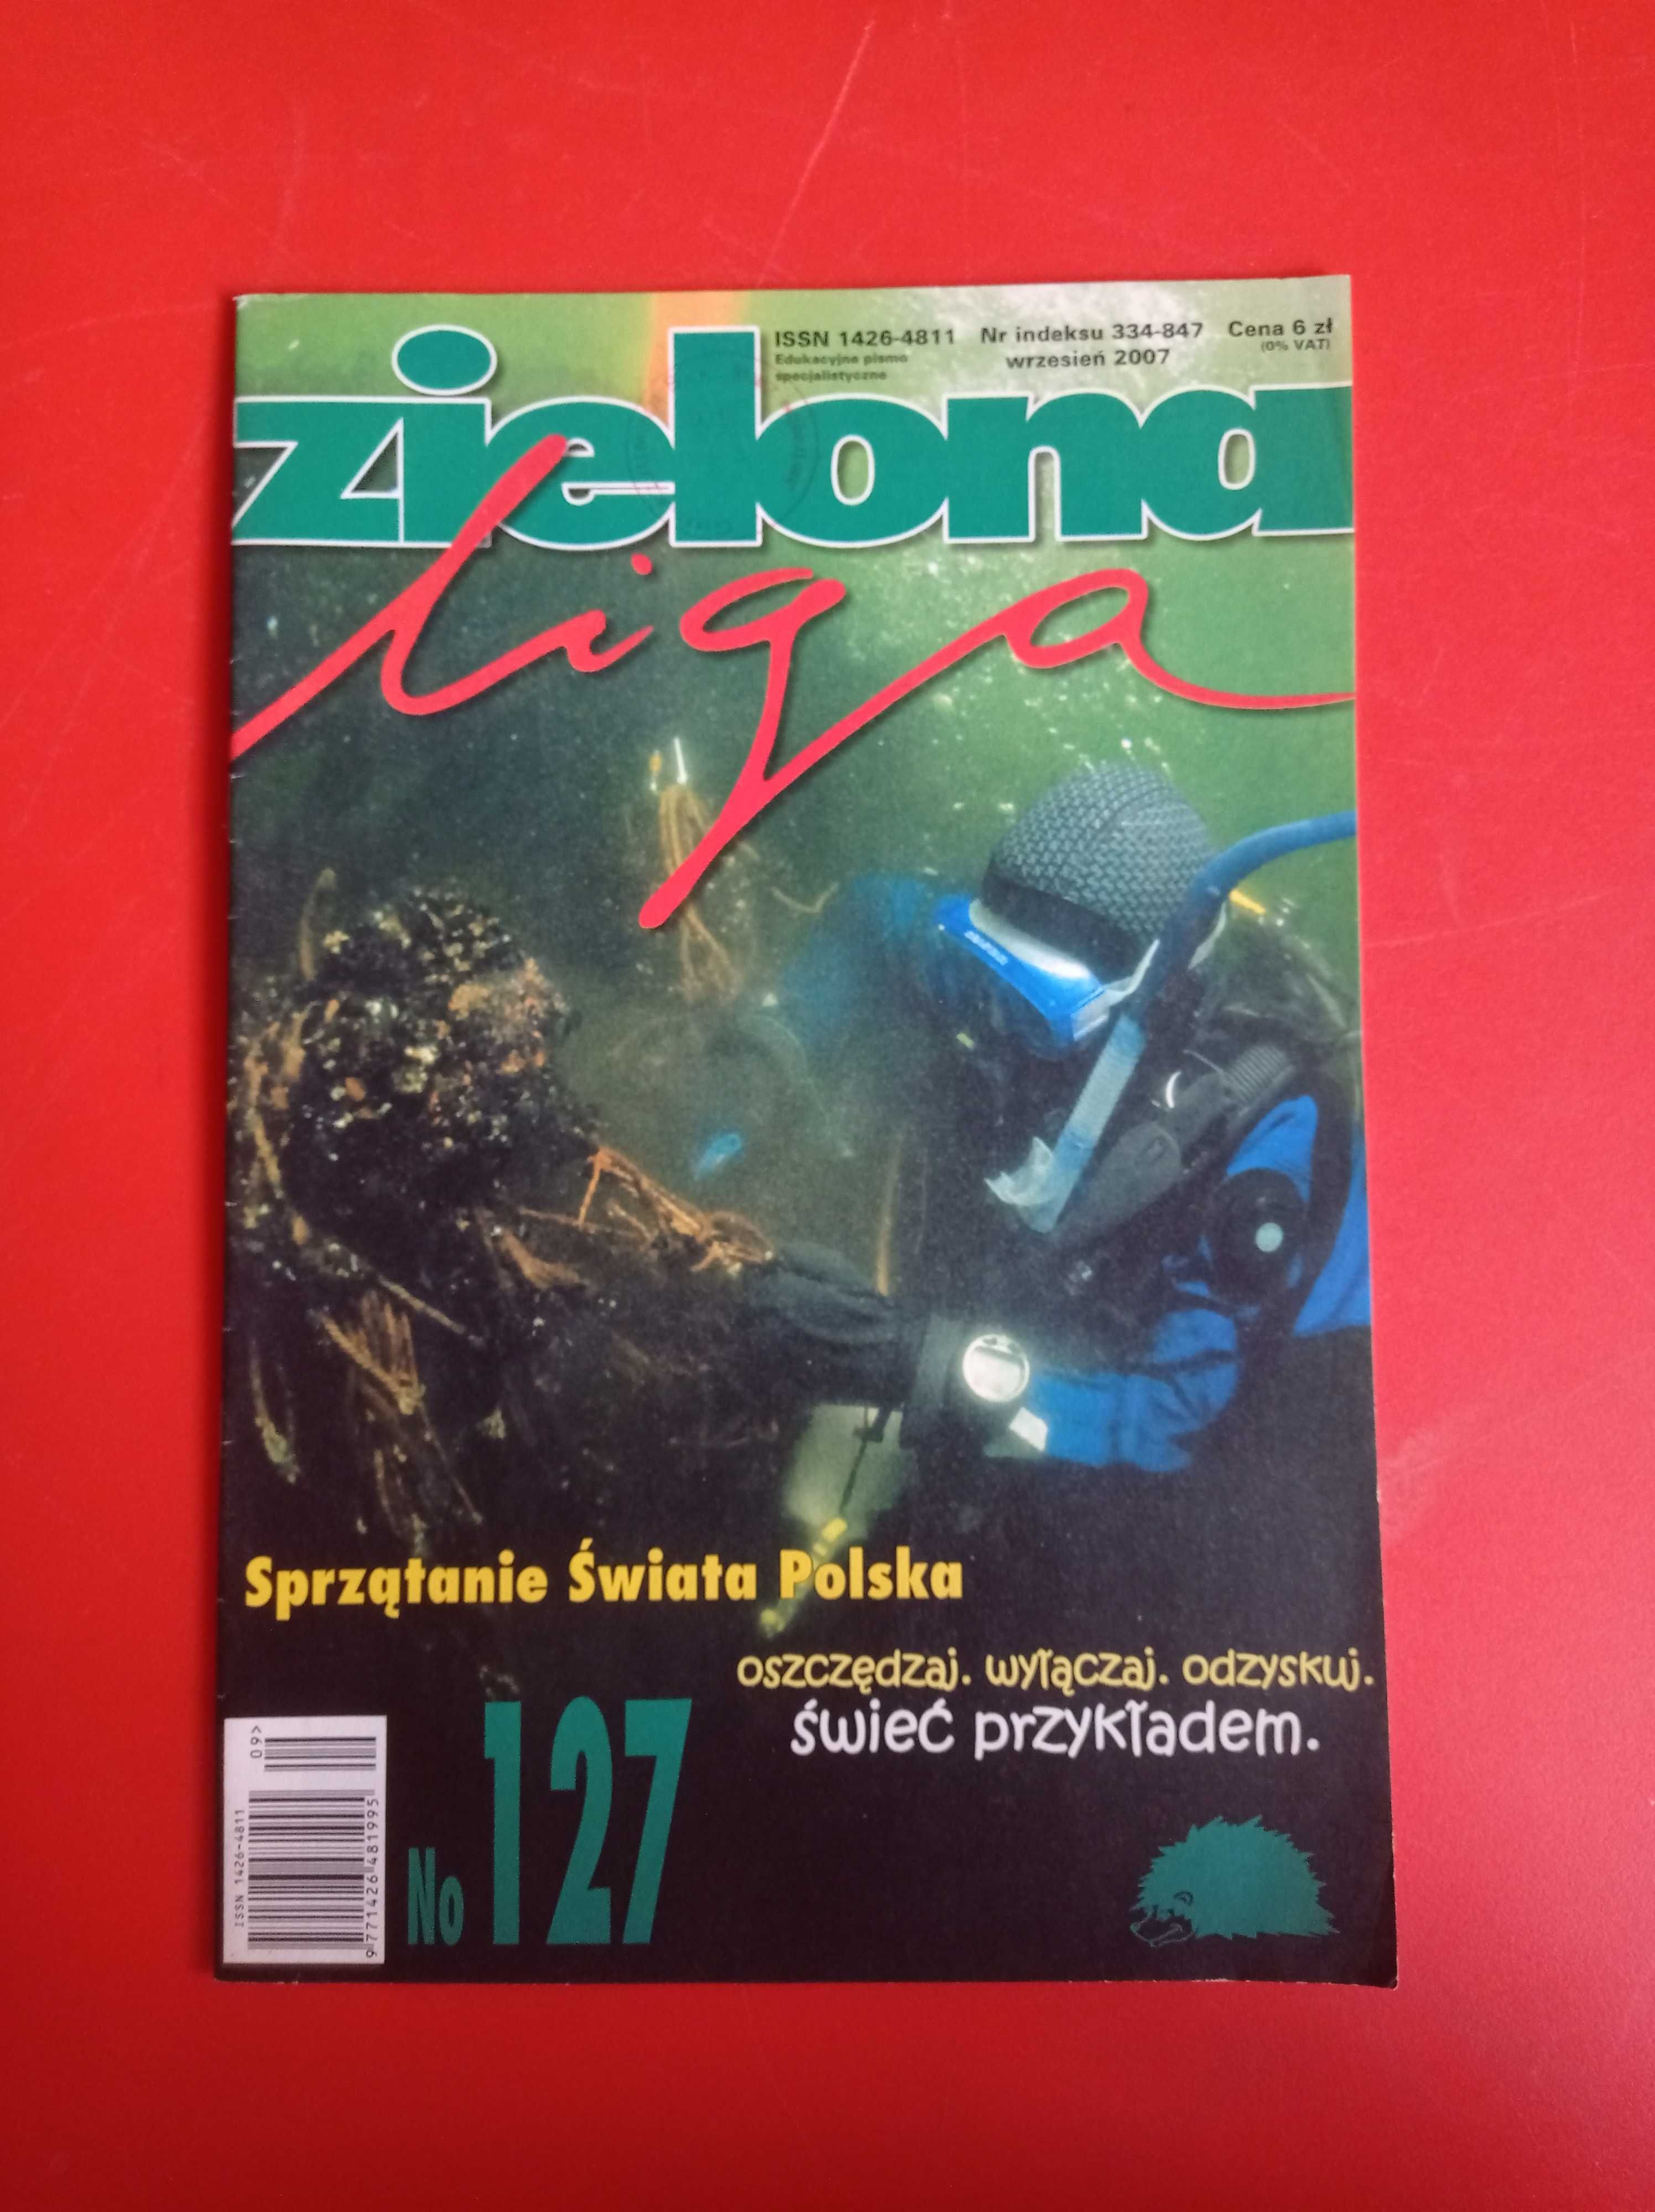 Zielona Liga, nr 127, wrzesień 2007, rys. M. Trzepałka